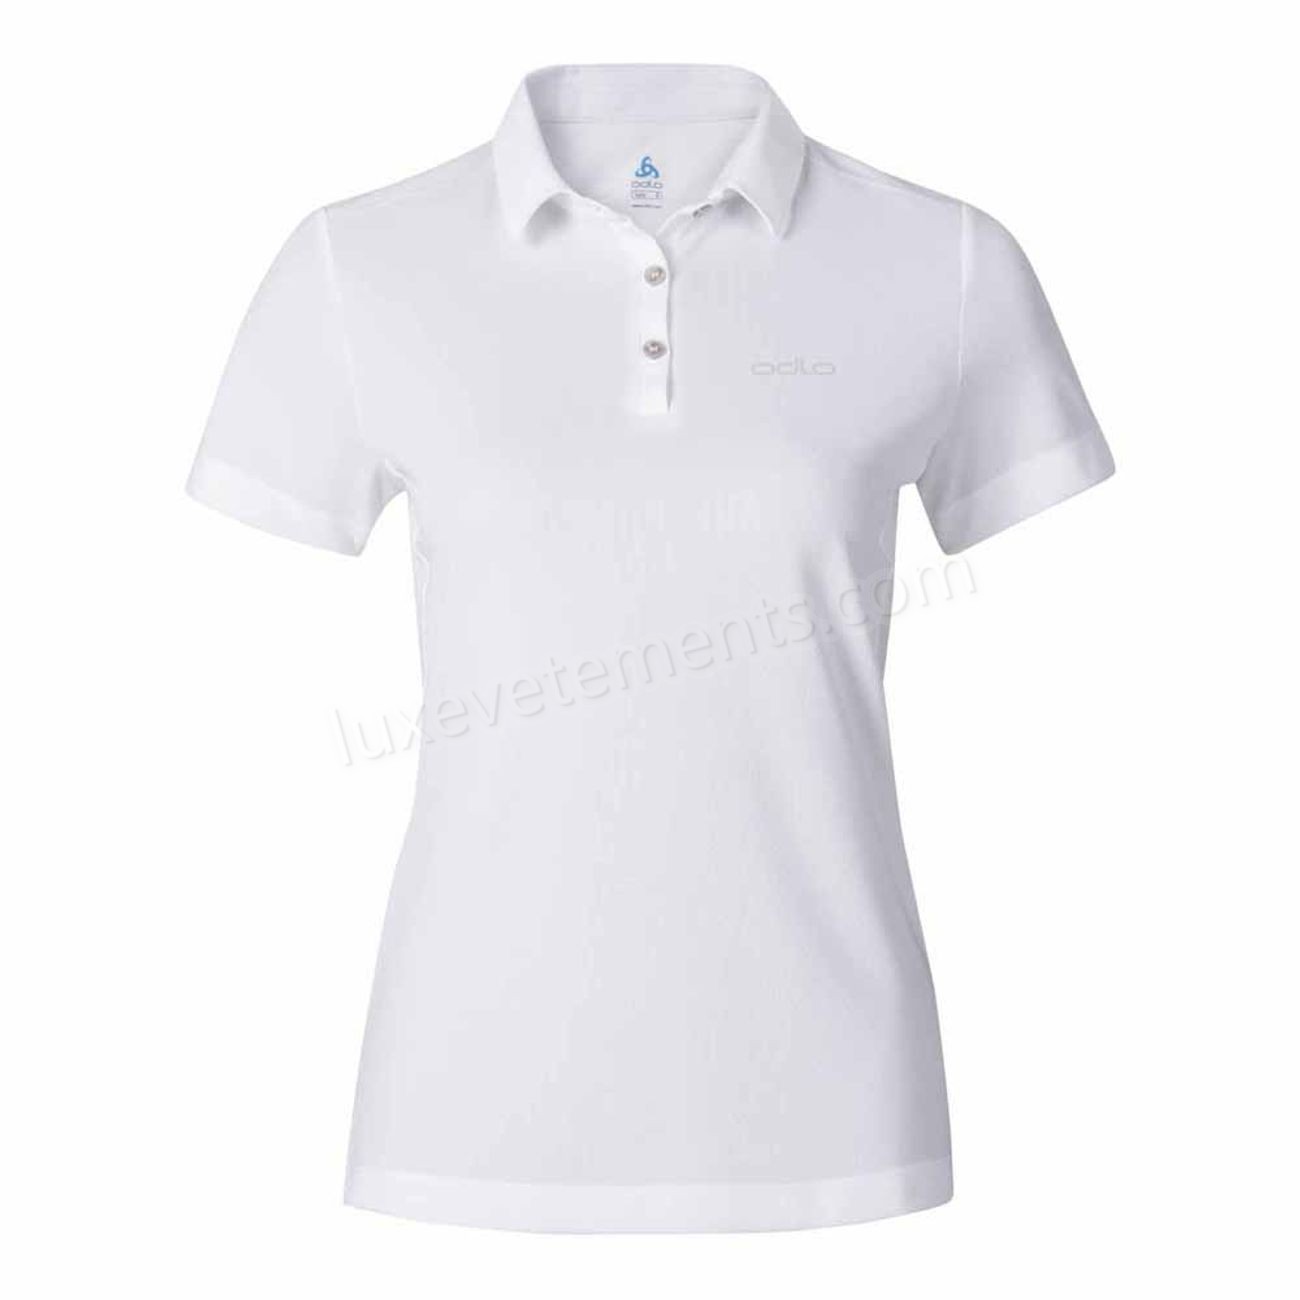 Odlo-montagne femme ODLO Odlo Tina Polo Shirt Vente en ligne - Odlo-montagne femme ODLO Odlo Tina Polo Shirt Vente en ligne